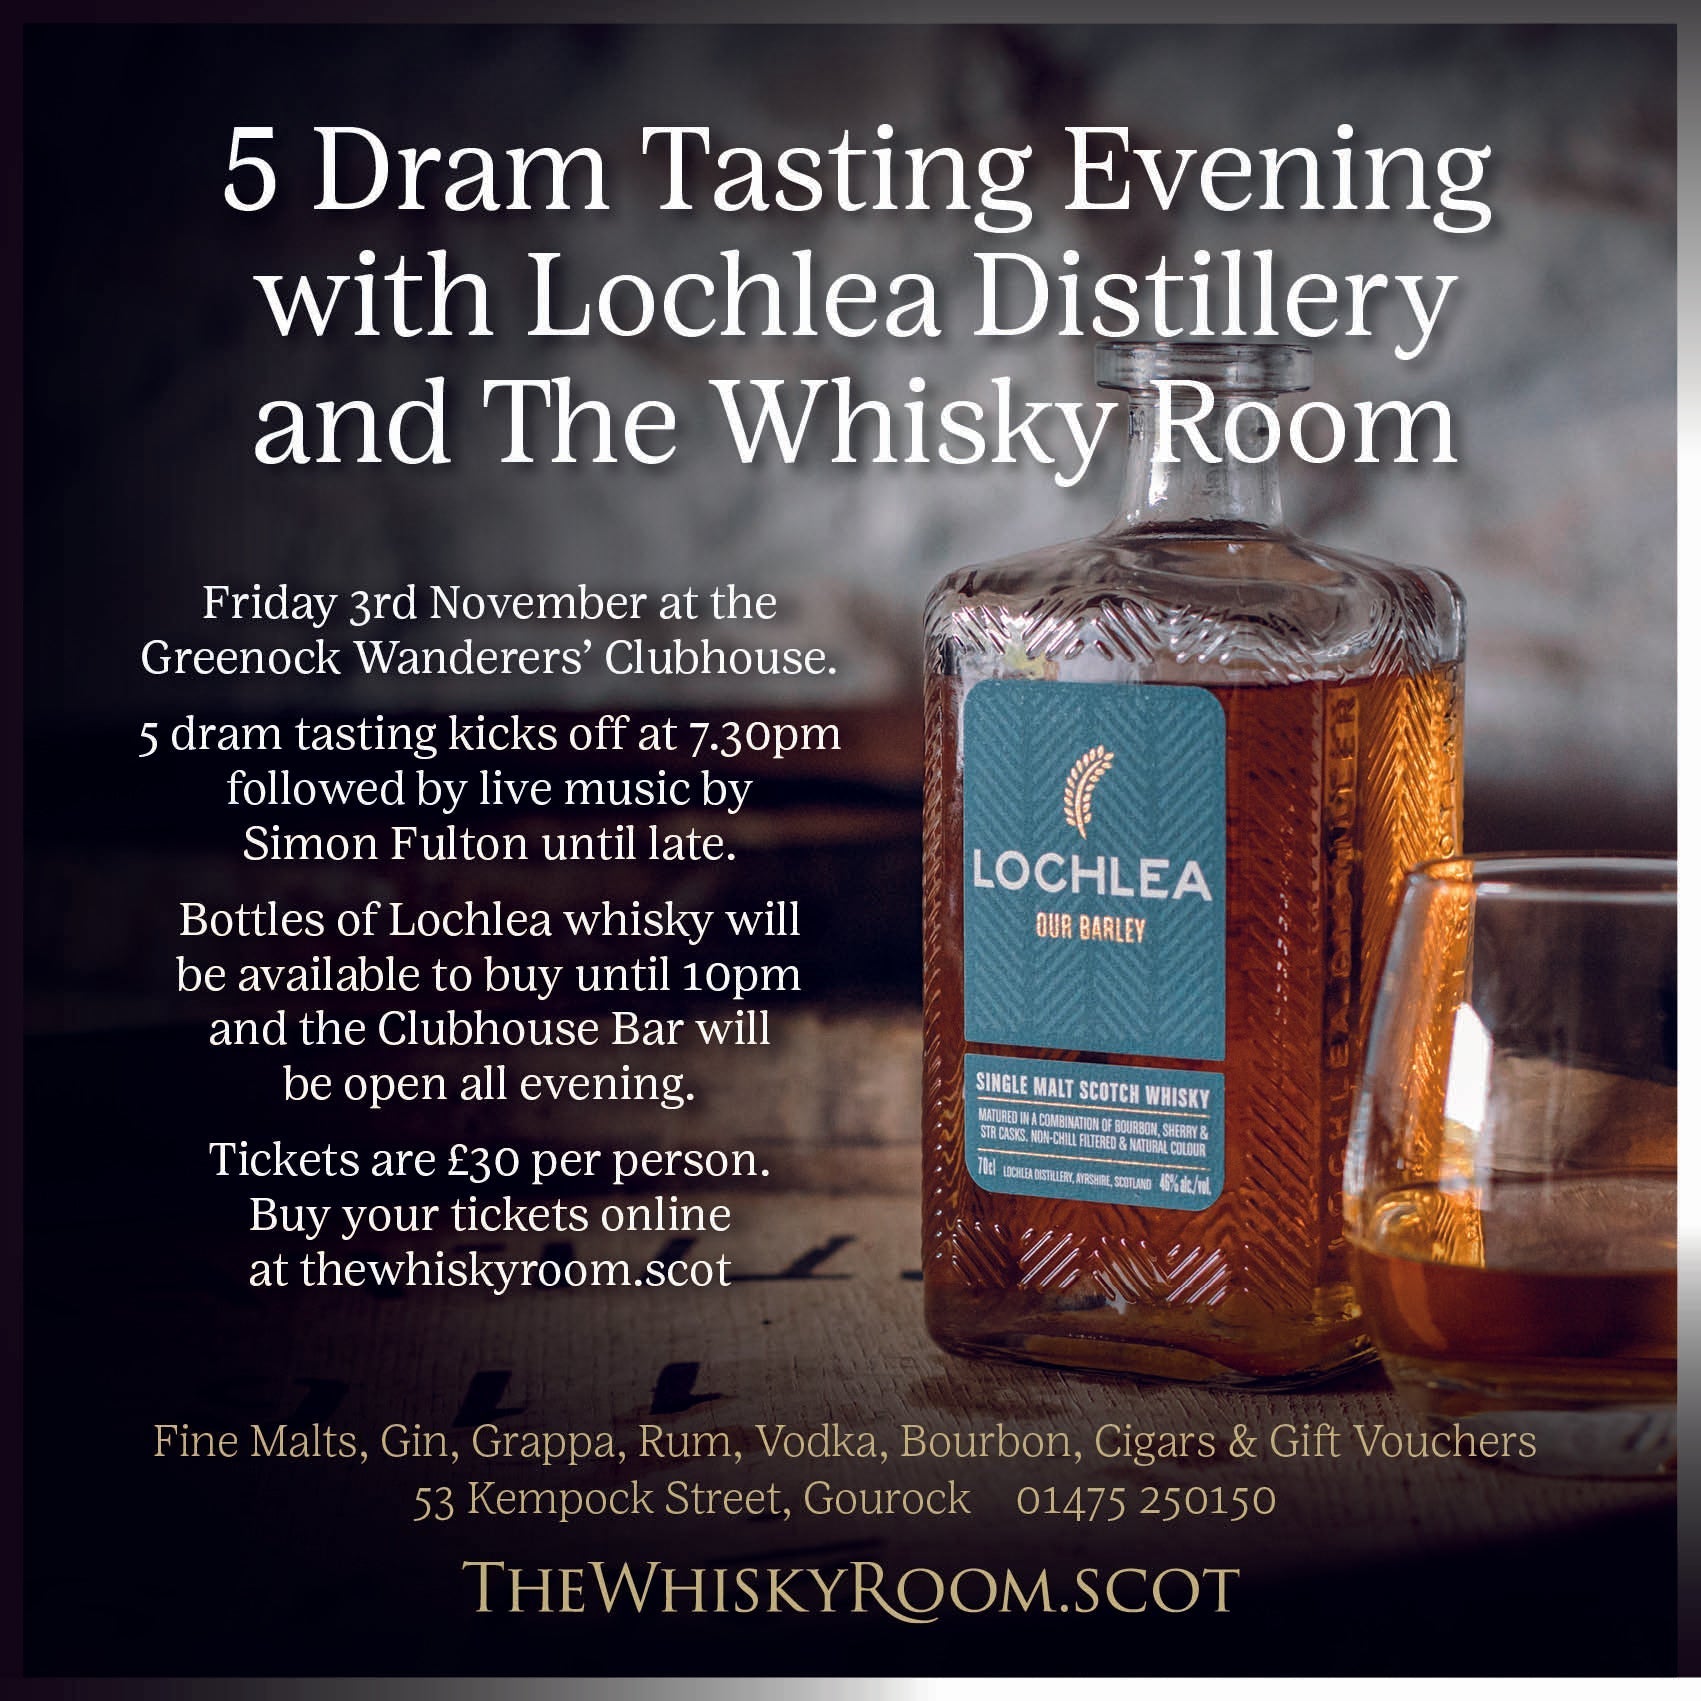 Evento de degustación, 3 de noviembre con Lochlea Distillery